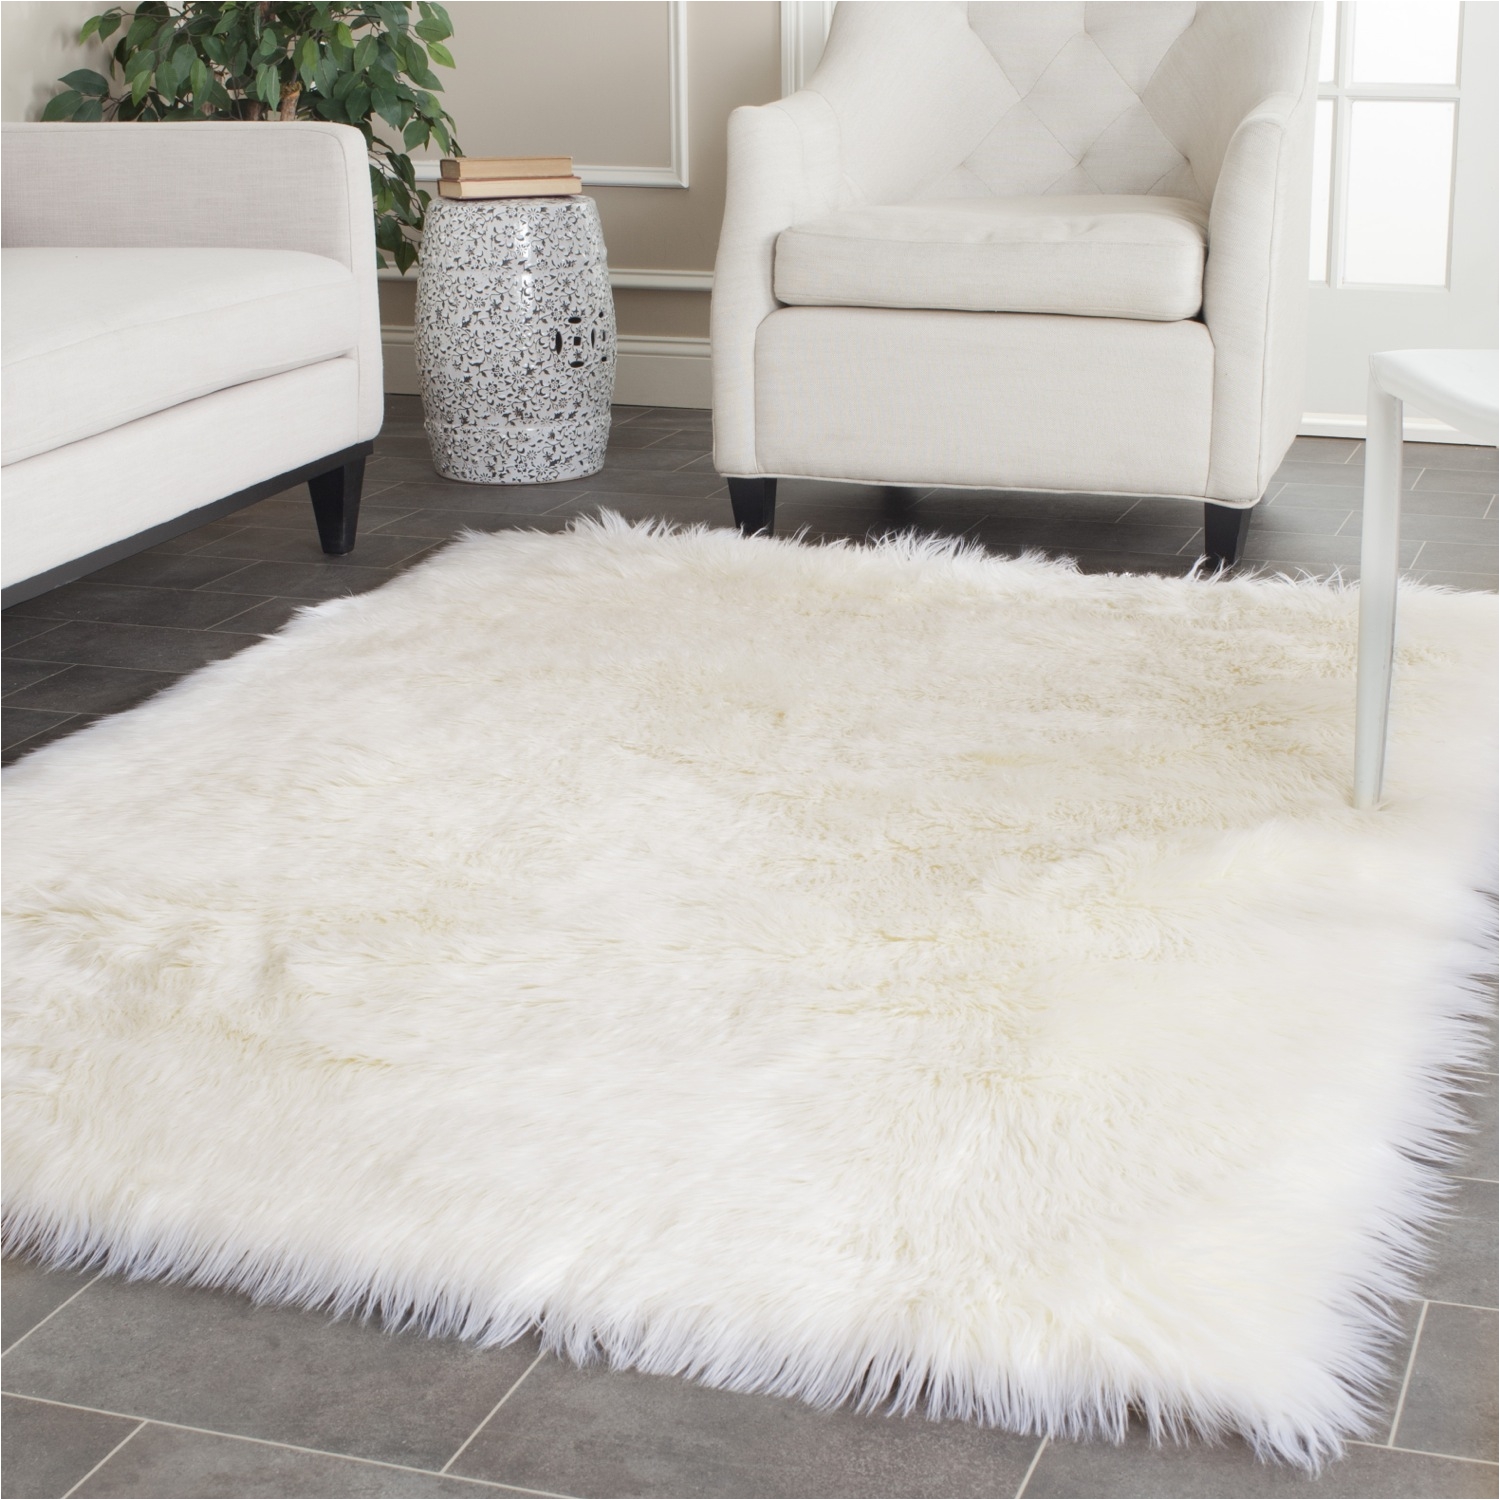 nice white sofa plus faux sheepskin rug on tile floor for living room decor